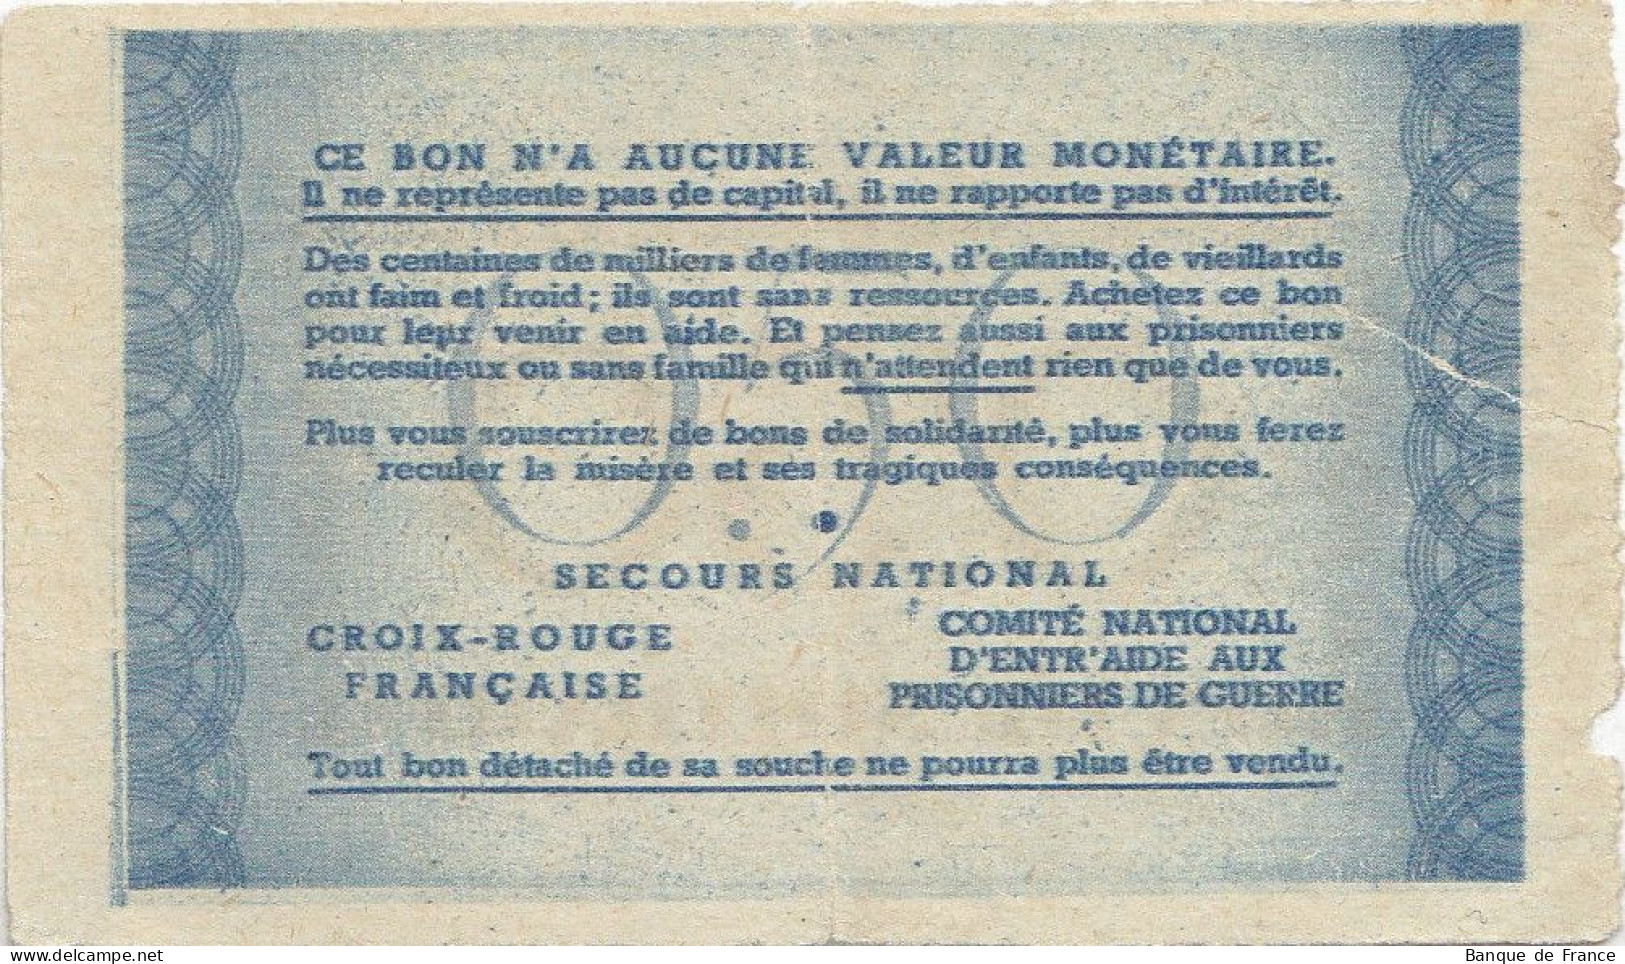 Bon De Solidarité France 0.50 Franc - Pétain 1941 / 1942 KL.01 - Bons & Nécessité